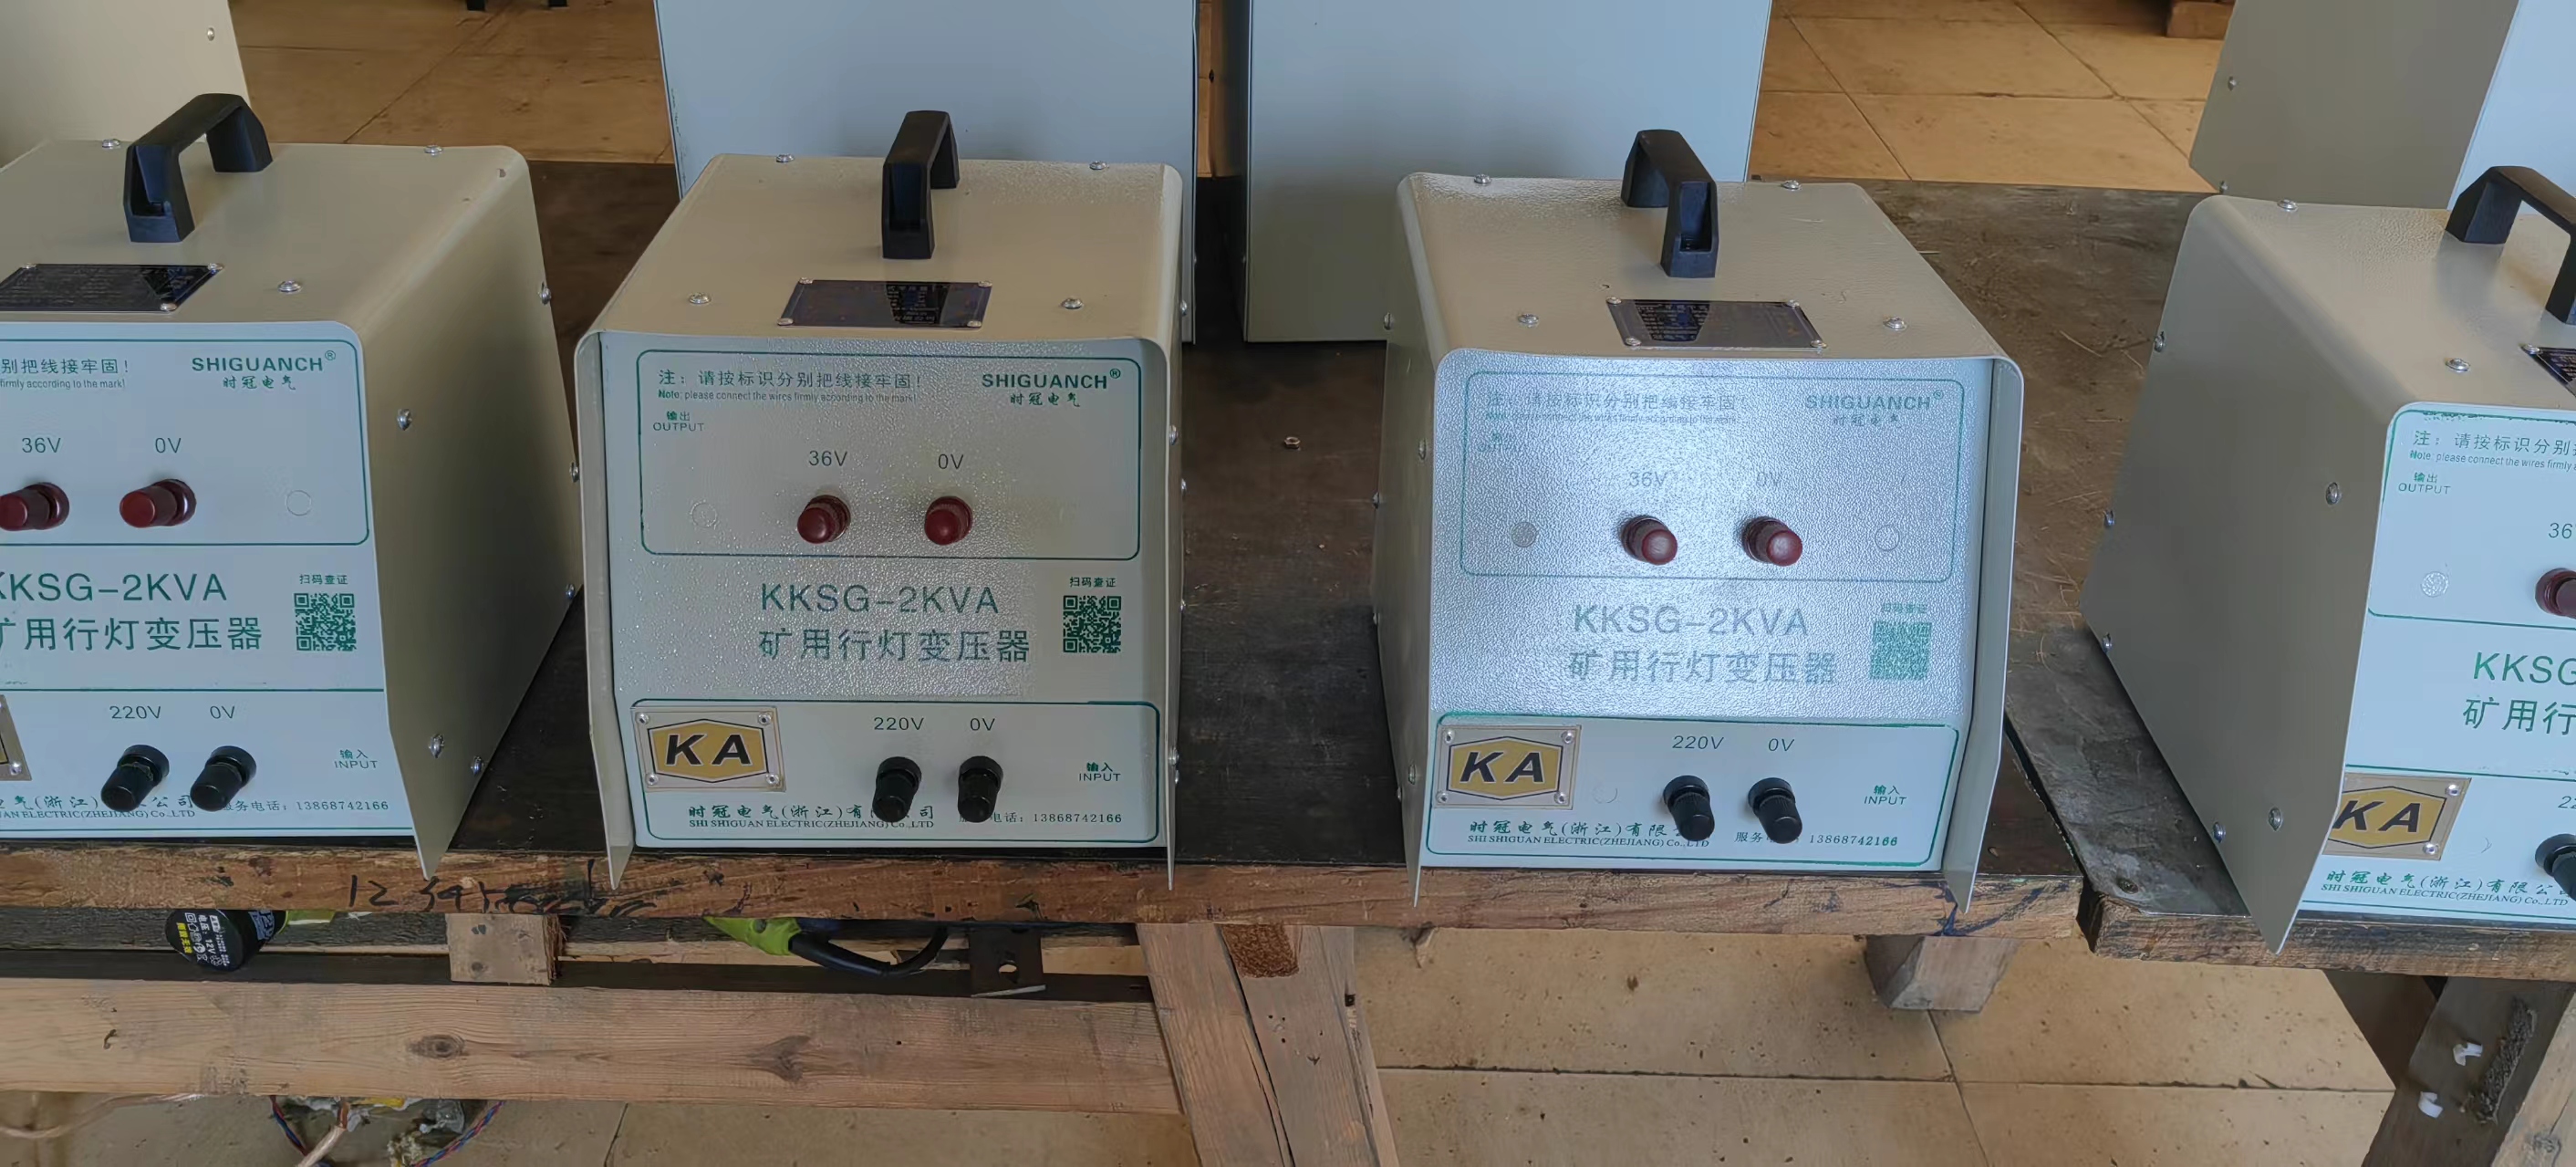 乐清供应KKSG-2KVA行灯变压器生产厂家-厂家报价-厂家供应-哪里有-哪里好